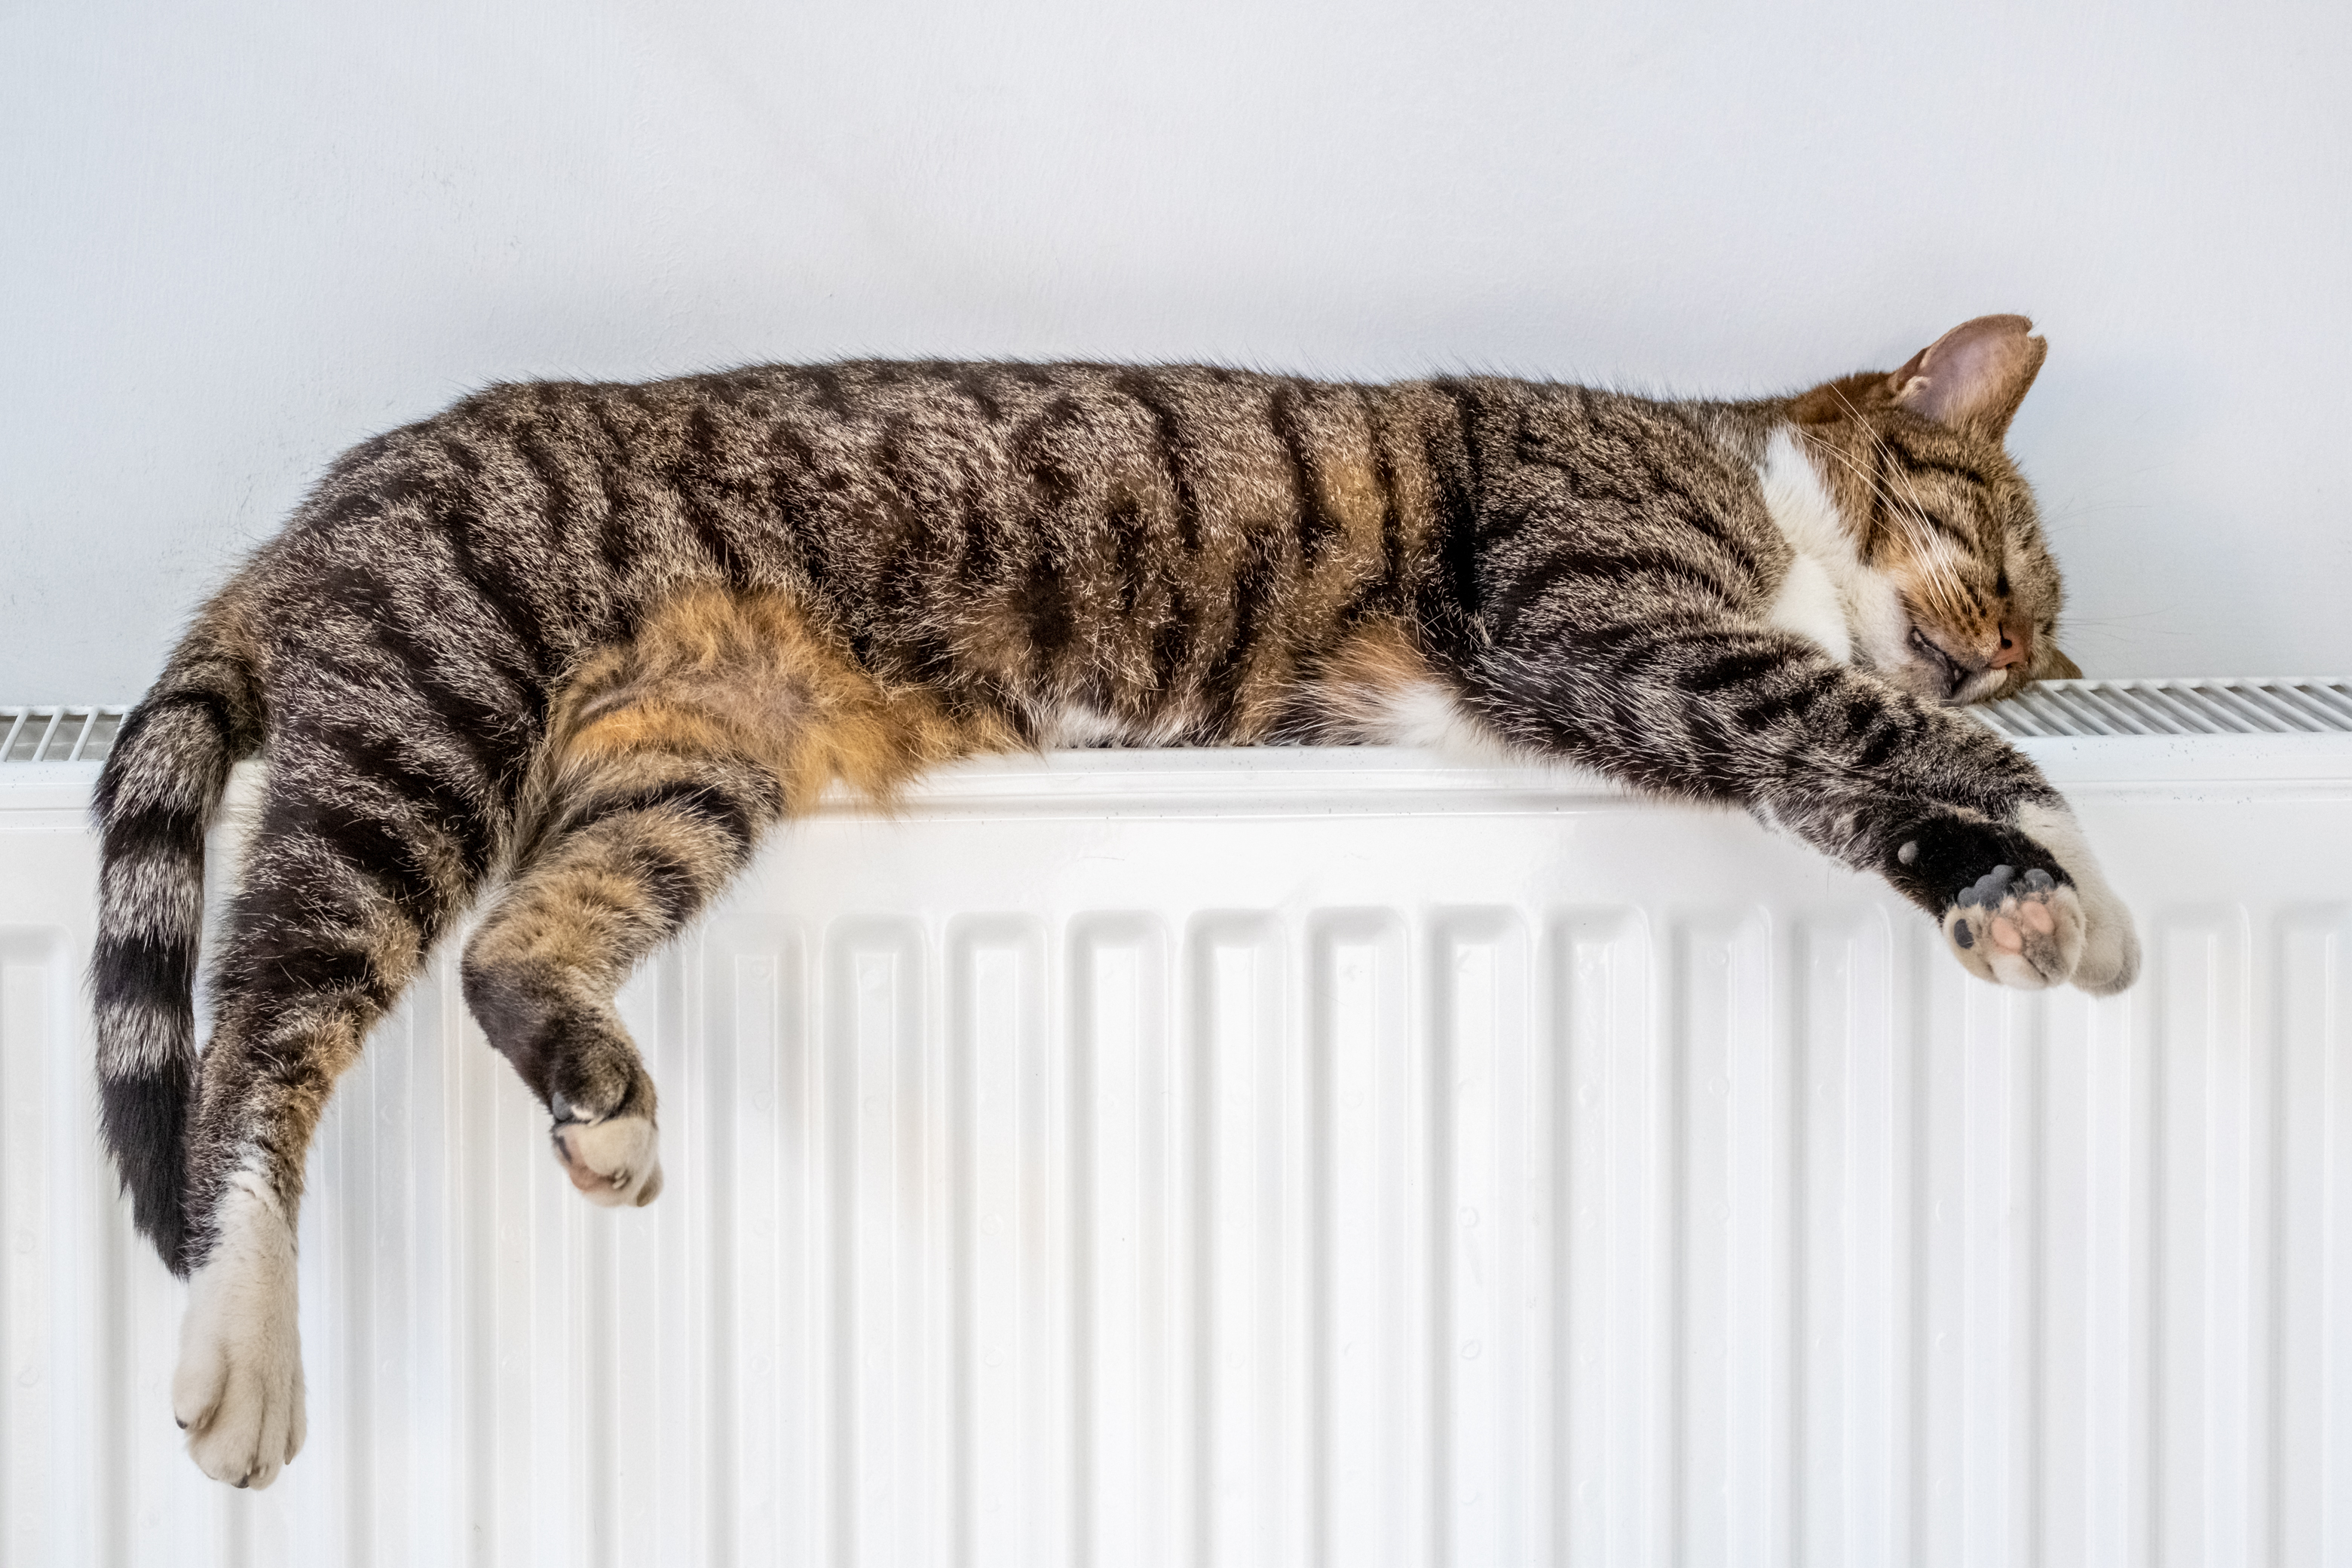 Kat, der ligger på en varmeapparat.